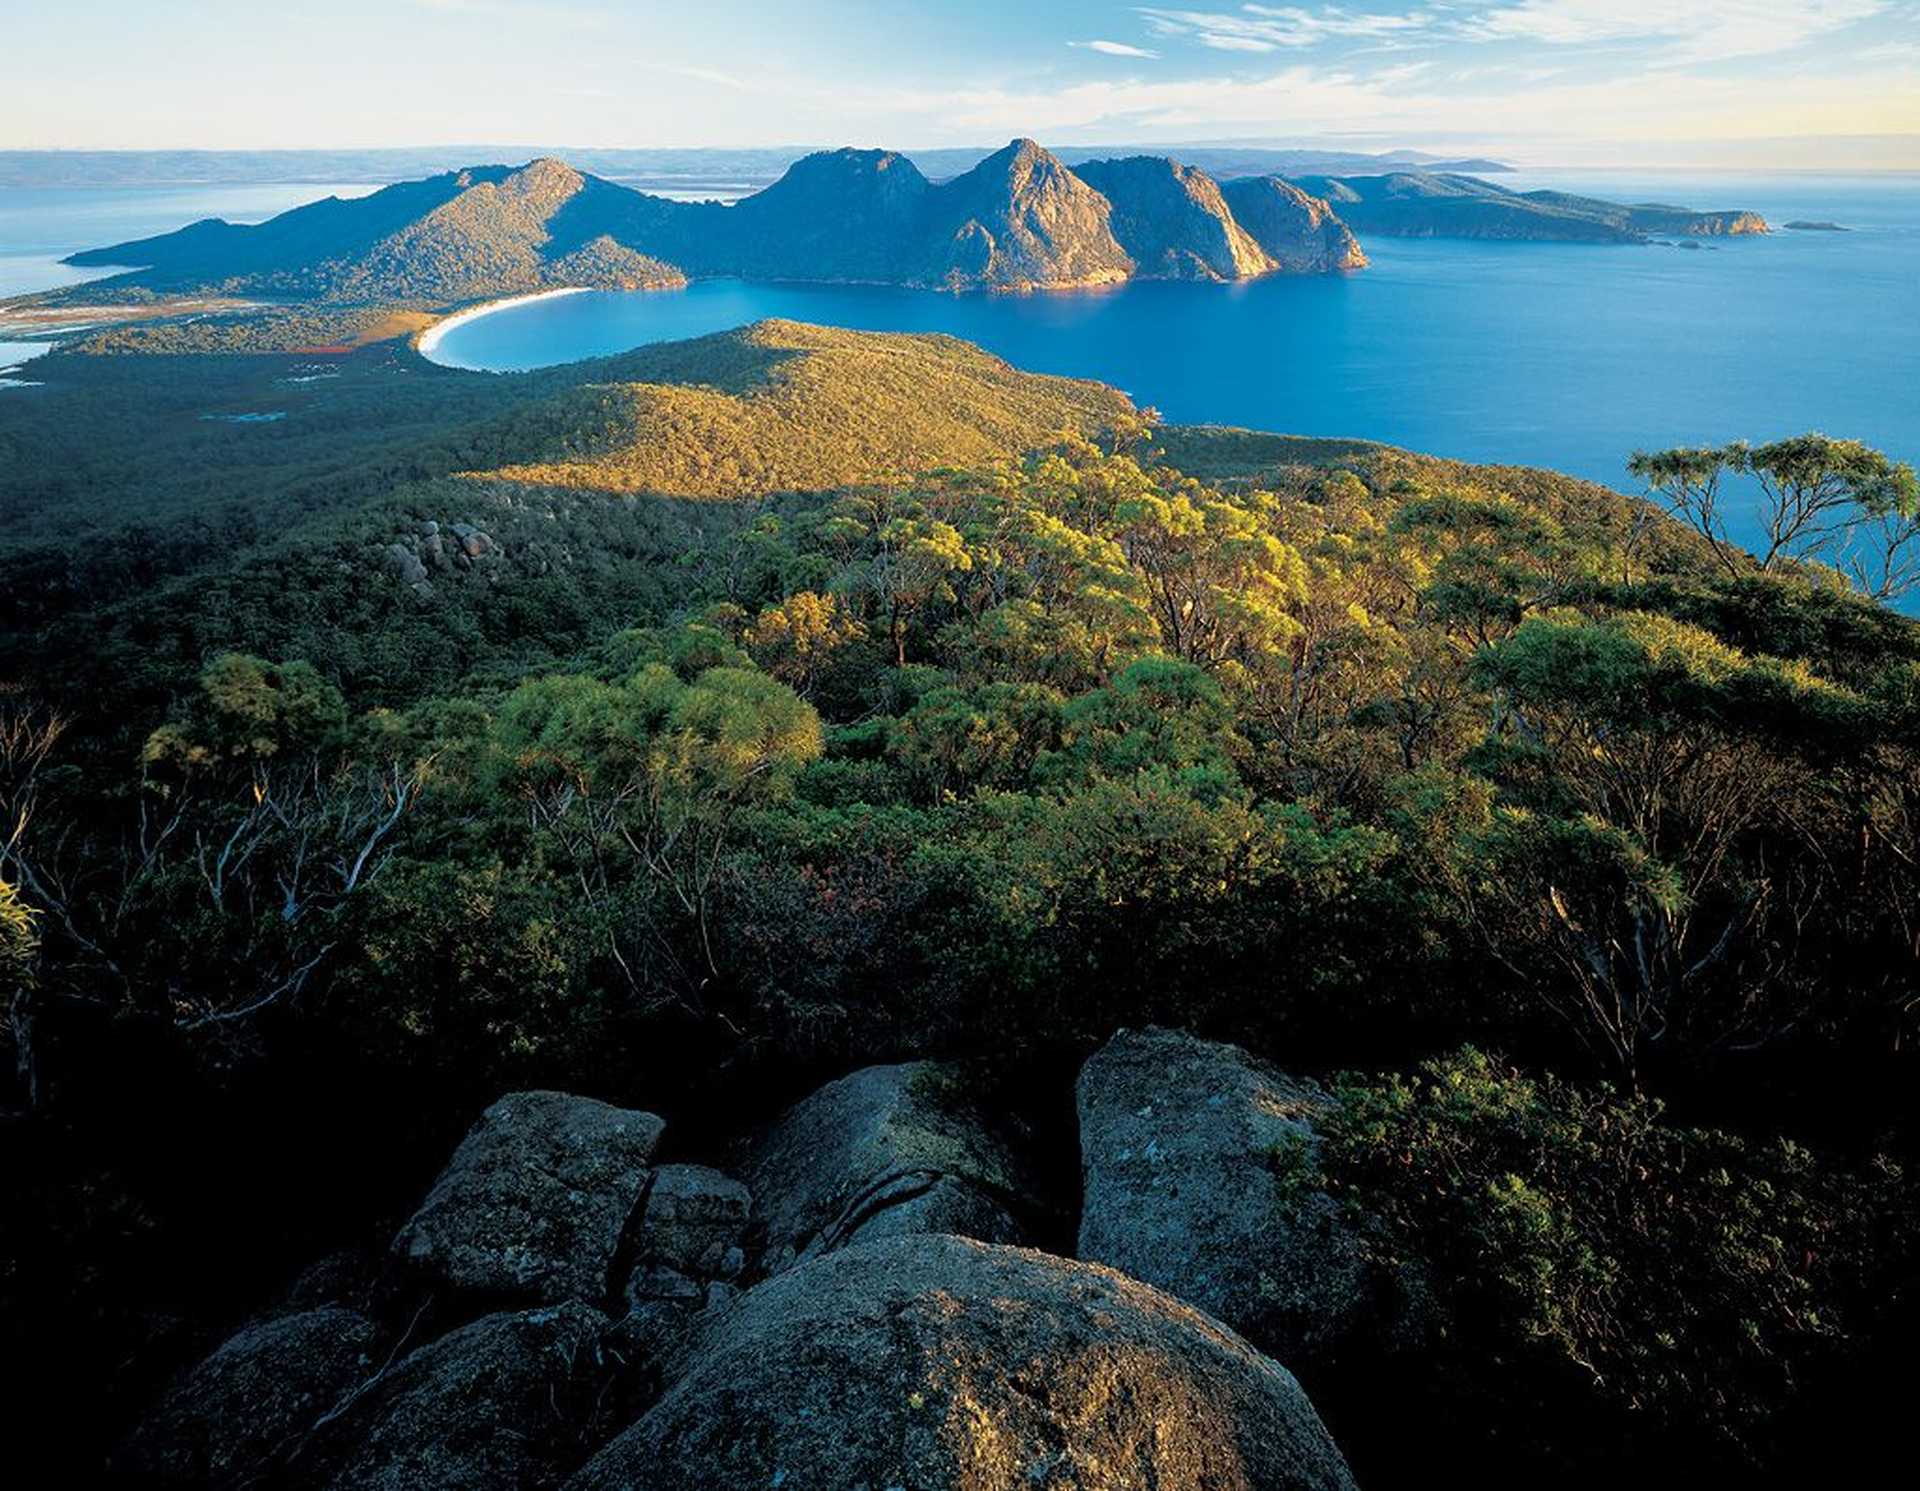 Voyage découverte - Les visages cachés de Tasmanie avec William Seager